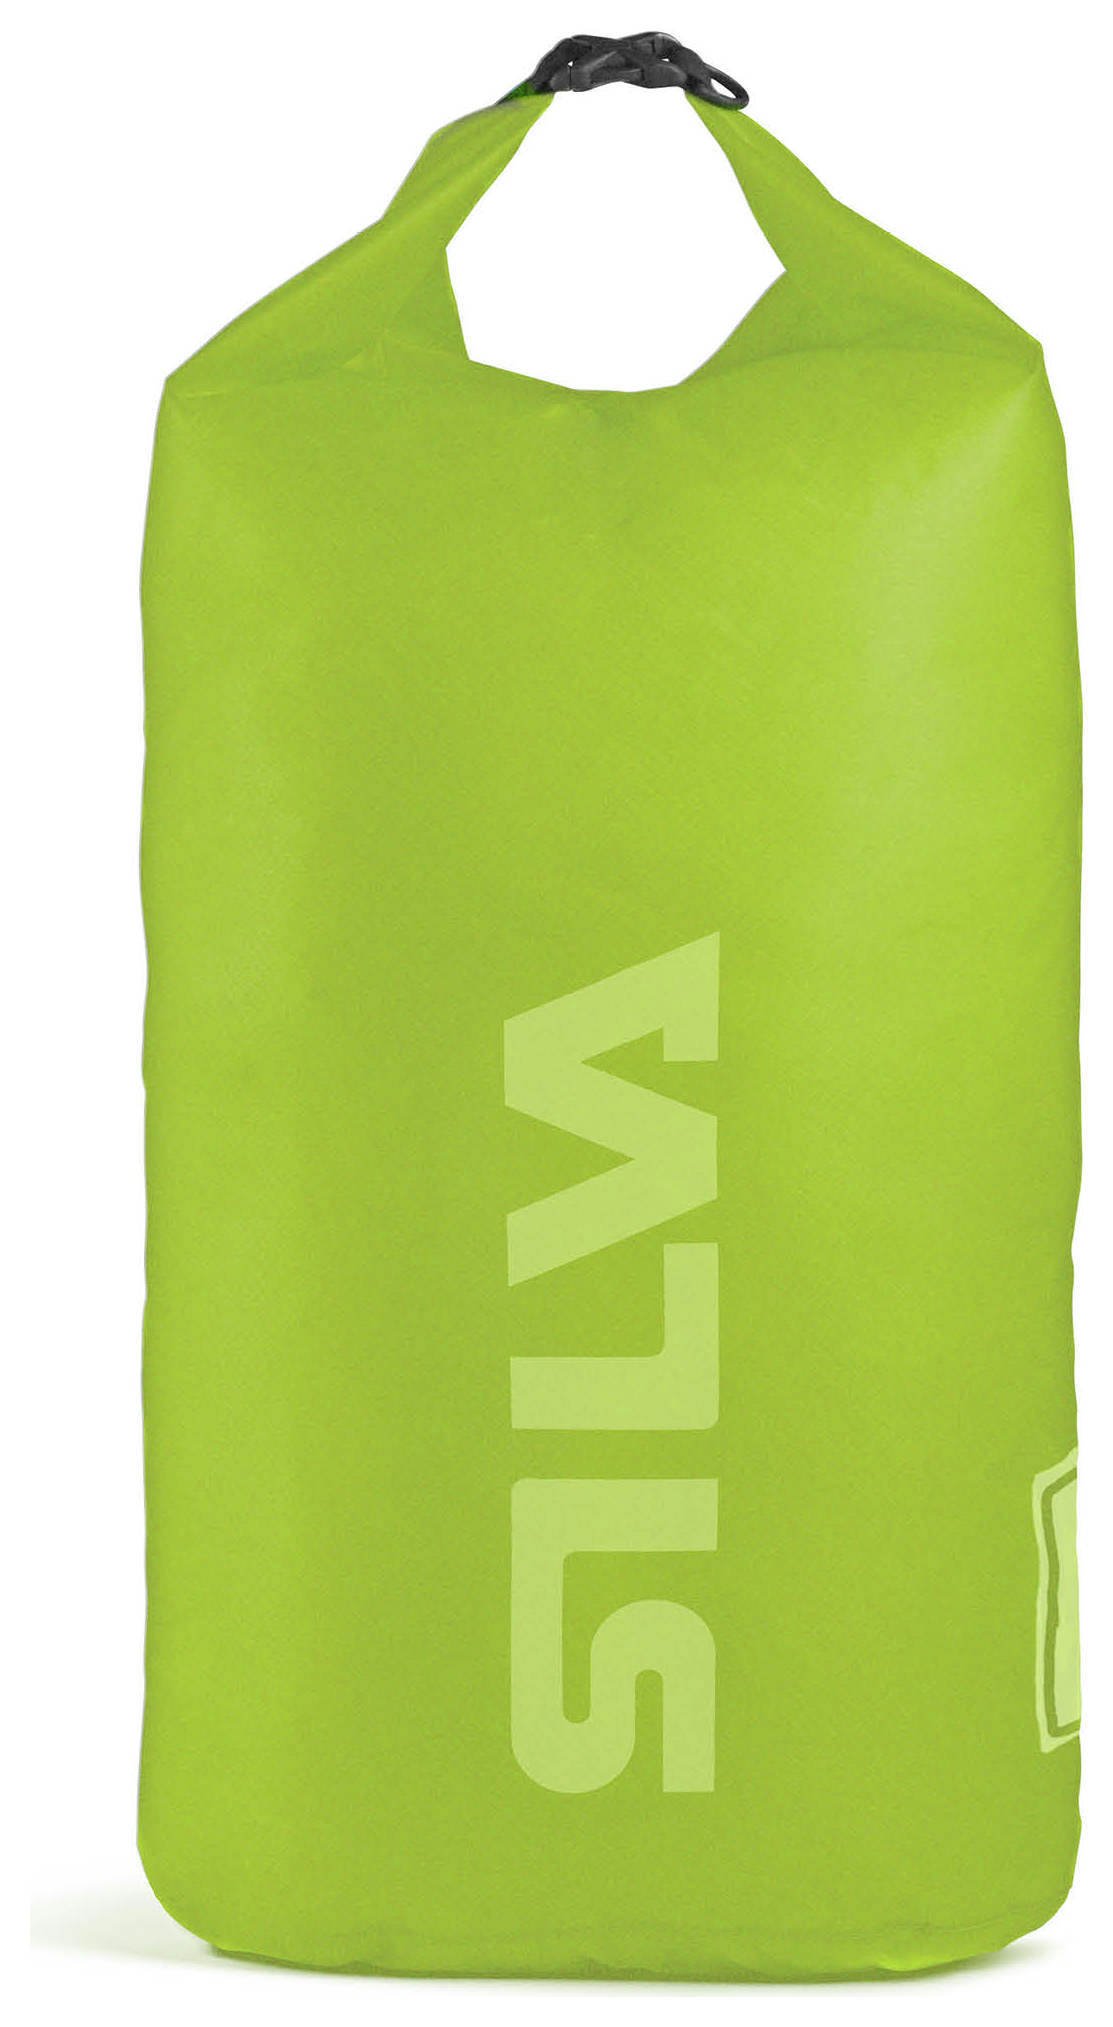 SILVA Carry Dry Bag 70D 24L.